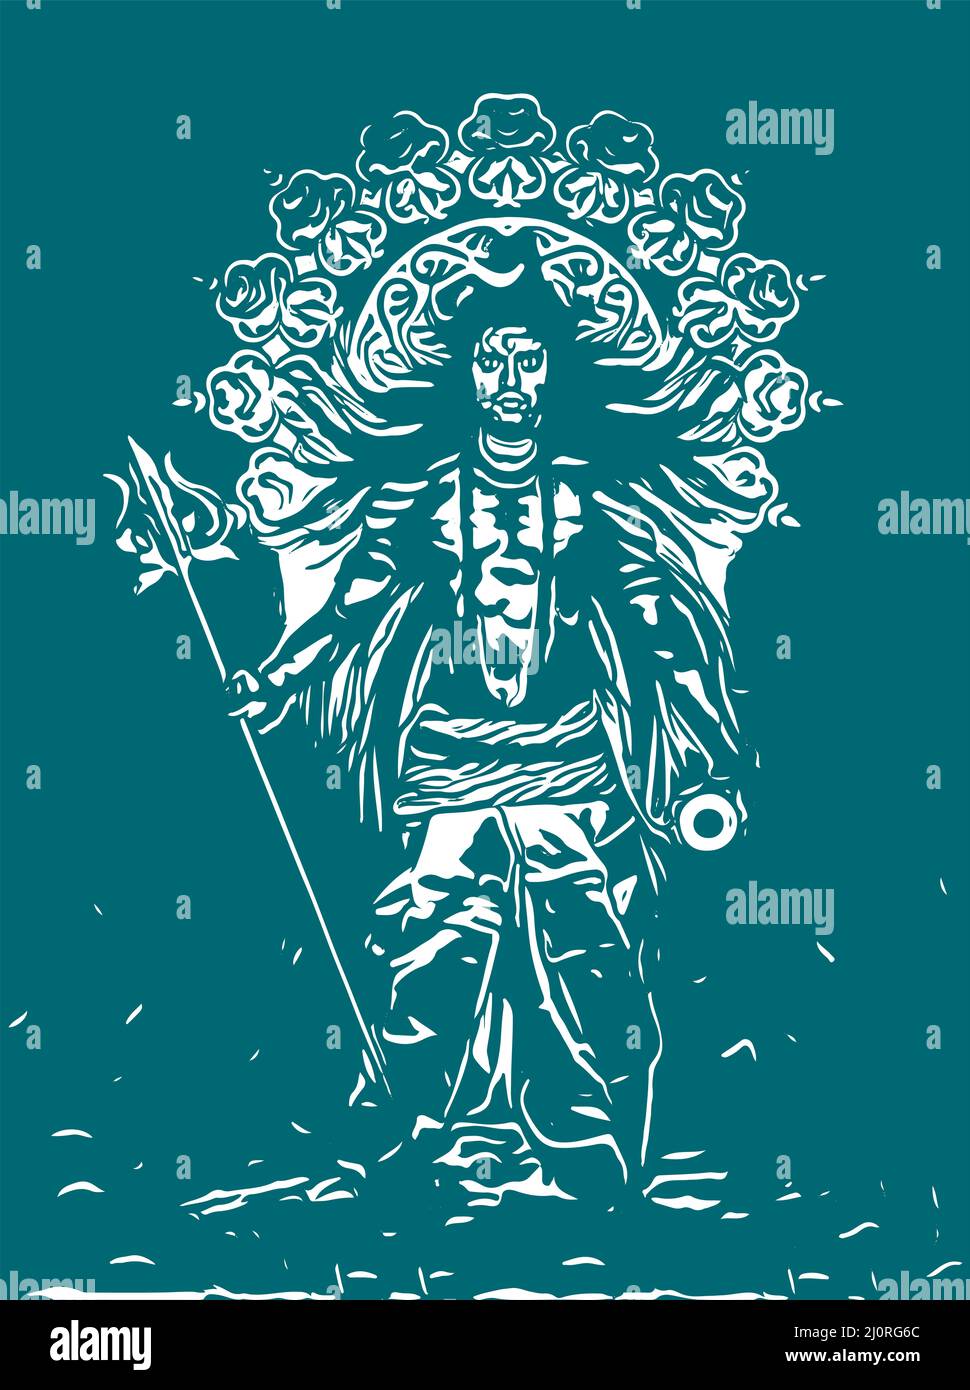 Illustrazione verticale della silhouette di Lord Shiva e dei suoi simboli in verde e bianco Foto Stock